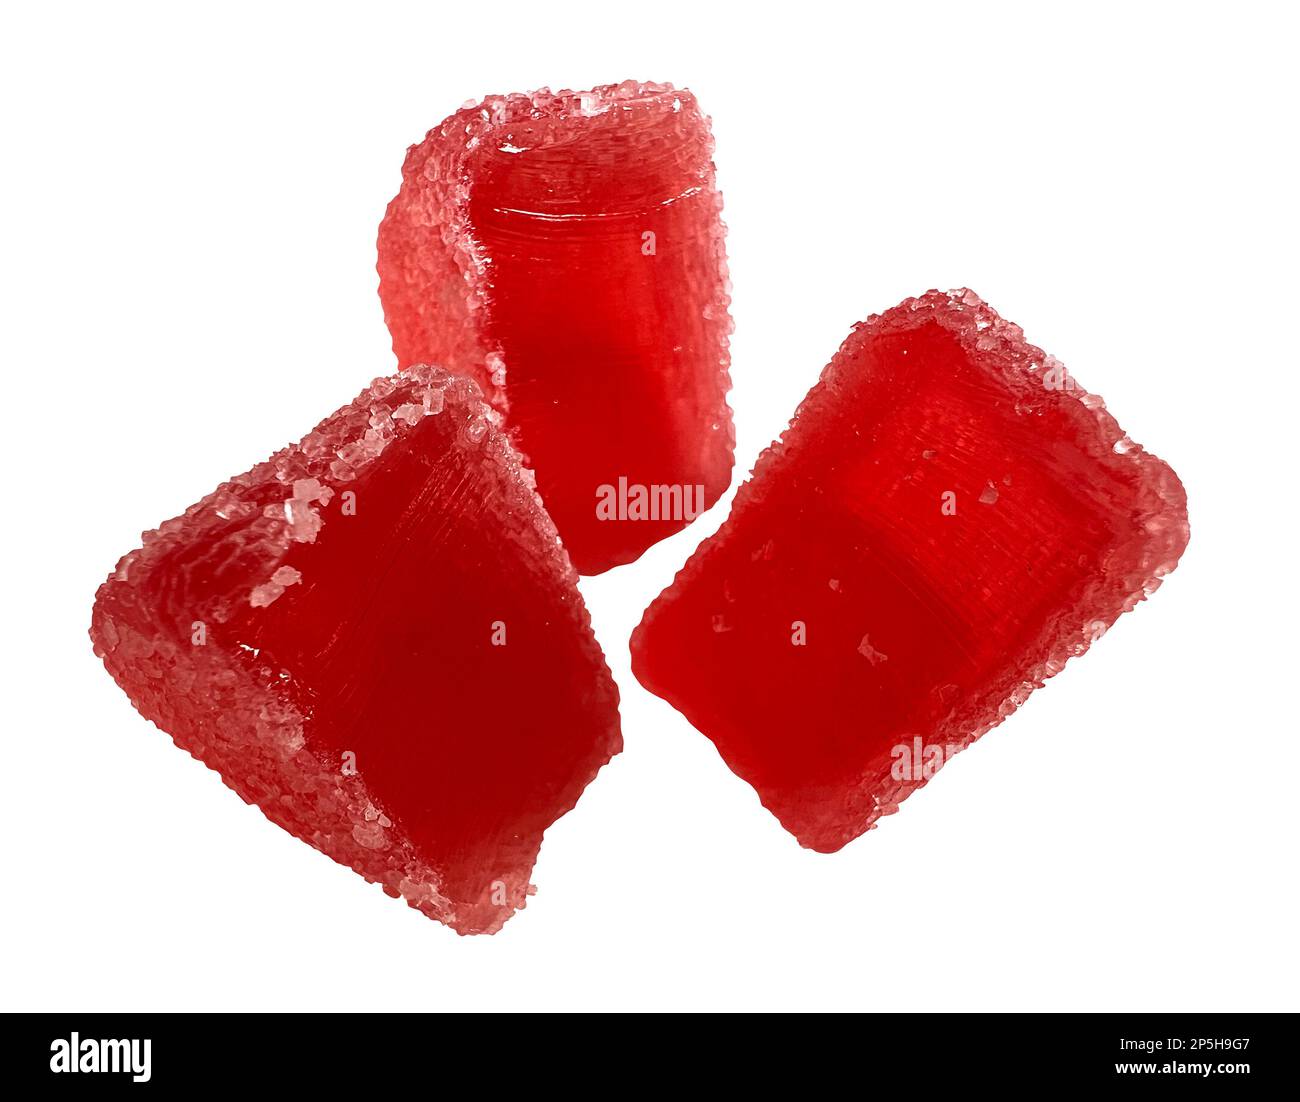 Gelées de fruits. Bonbons en gelée rouge isolés sur fond blanc. Masque inclus. Banque D'Images